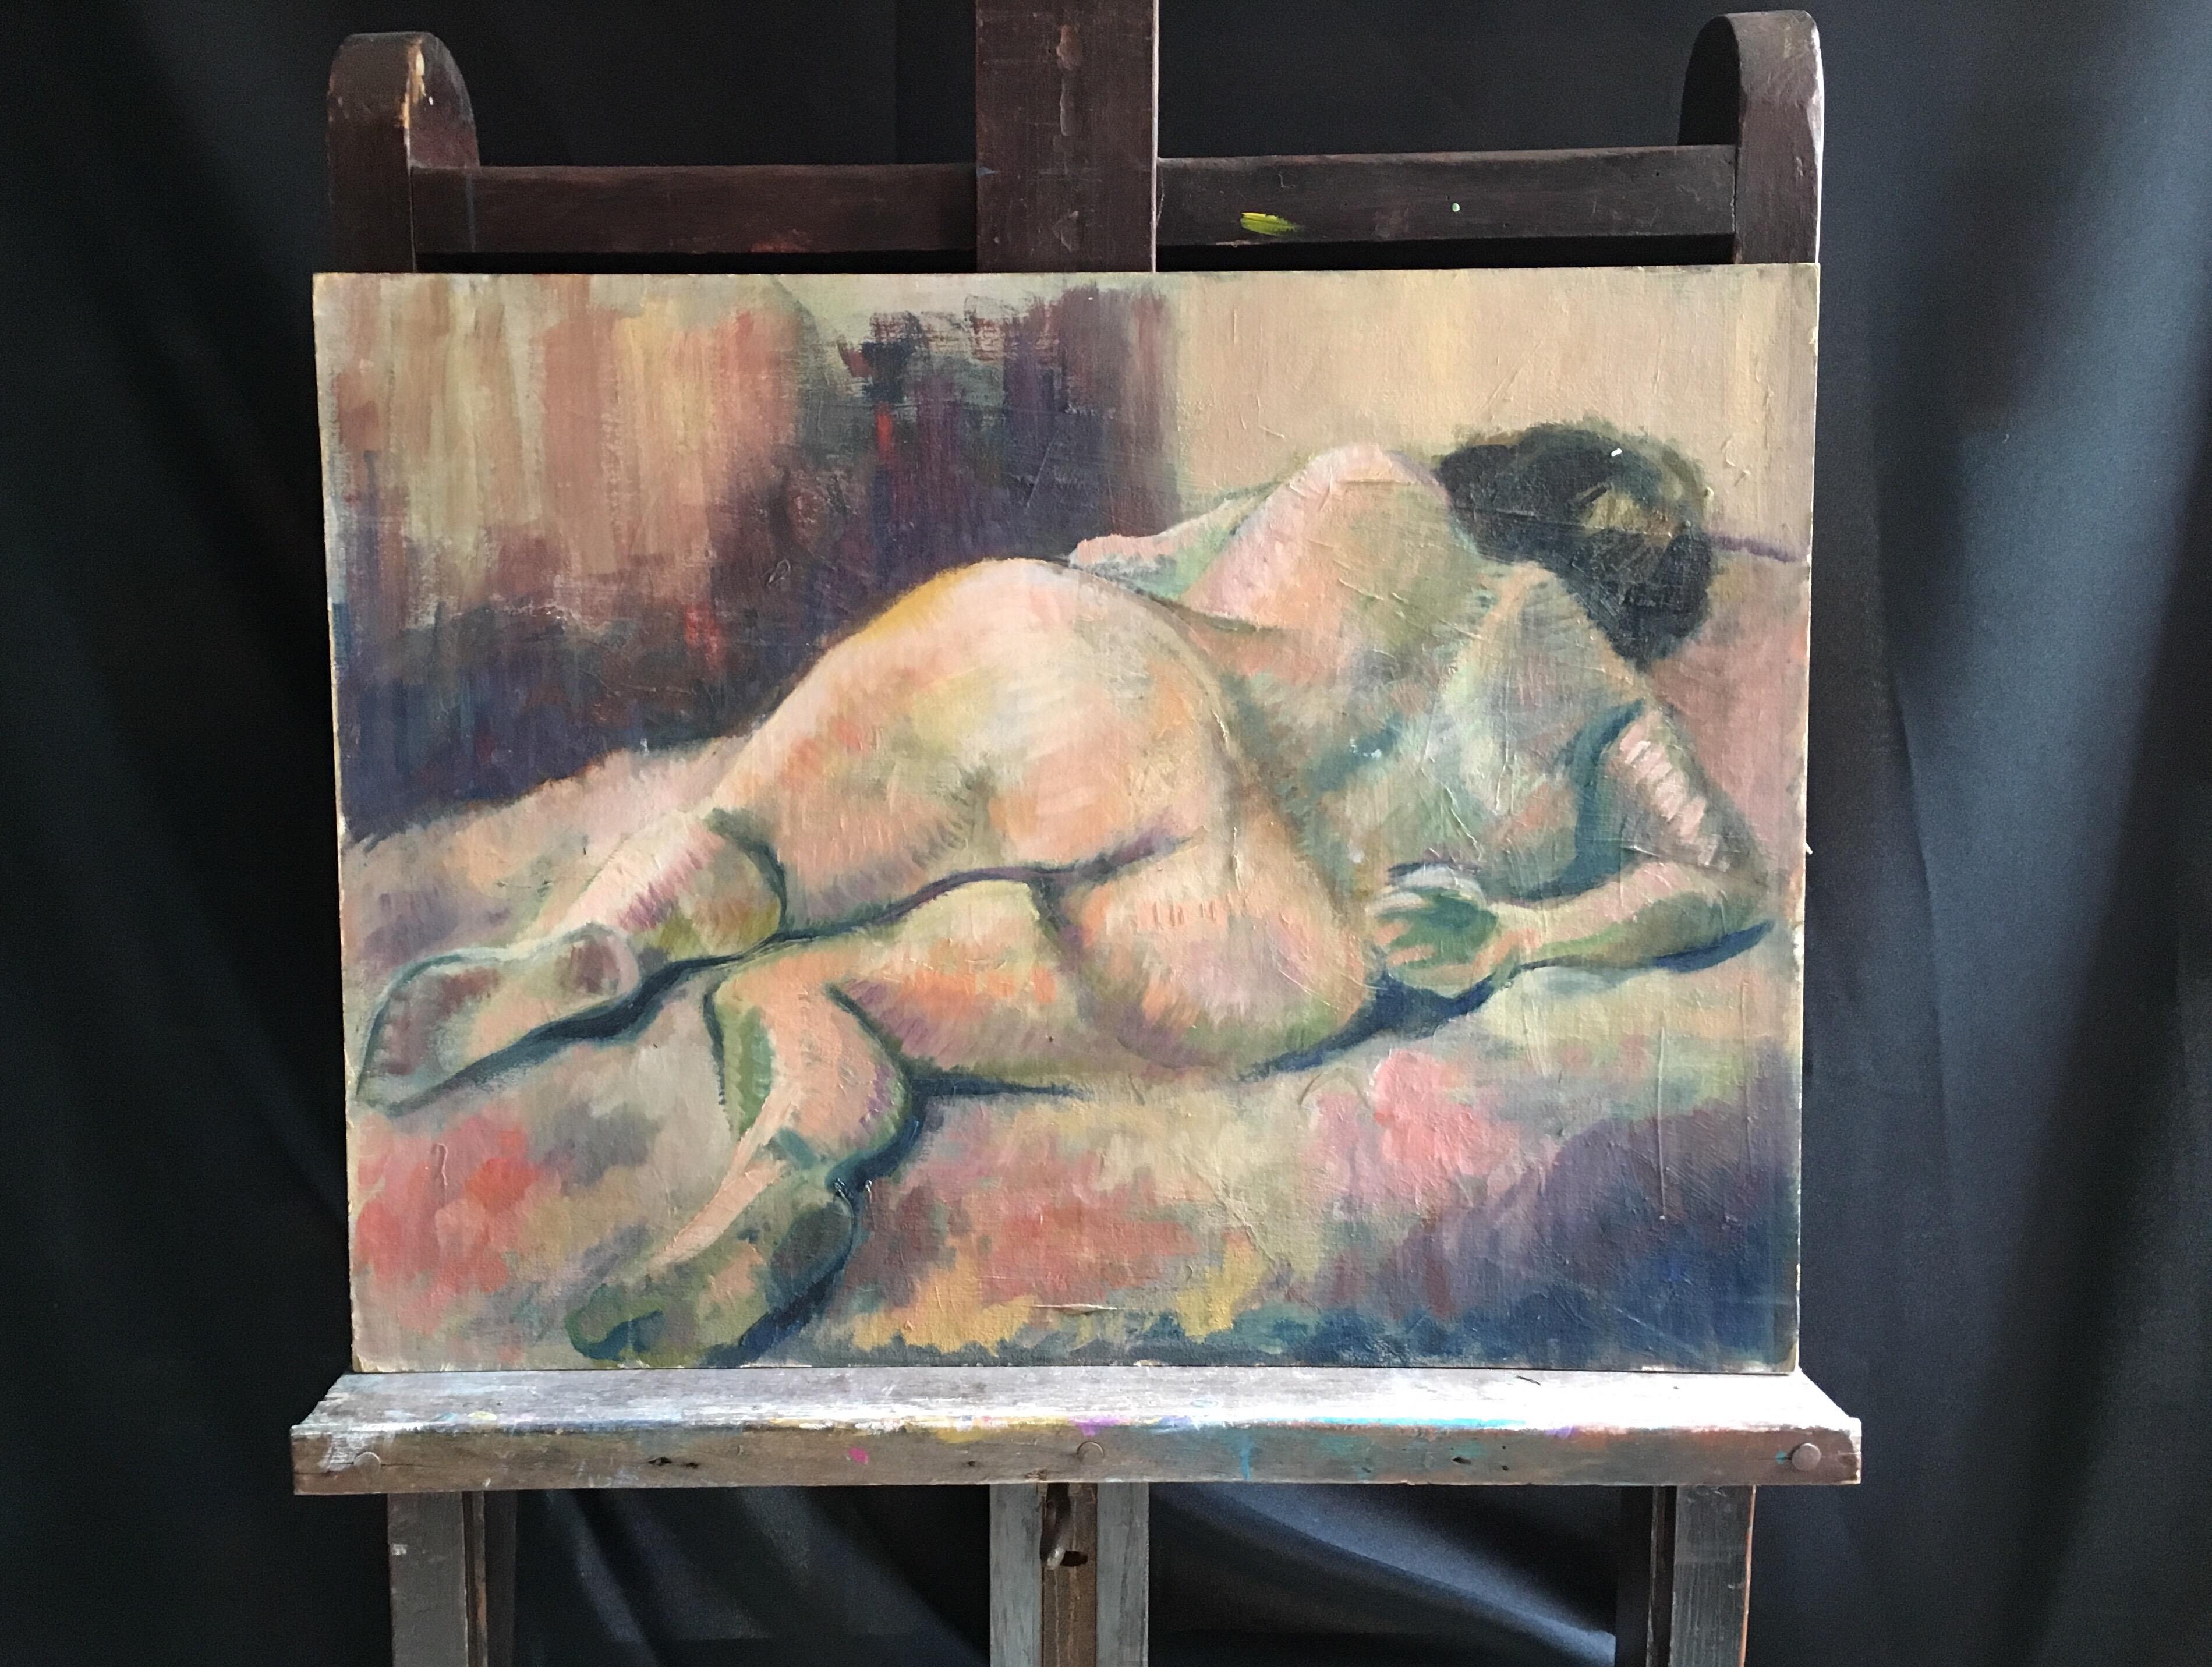 Femme nue abstraite Peinture à l'huile Milieu du 20ème siècle Artiste britannique moderne - Painting de Beryl Darton